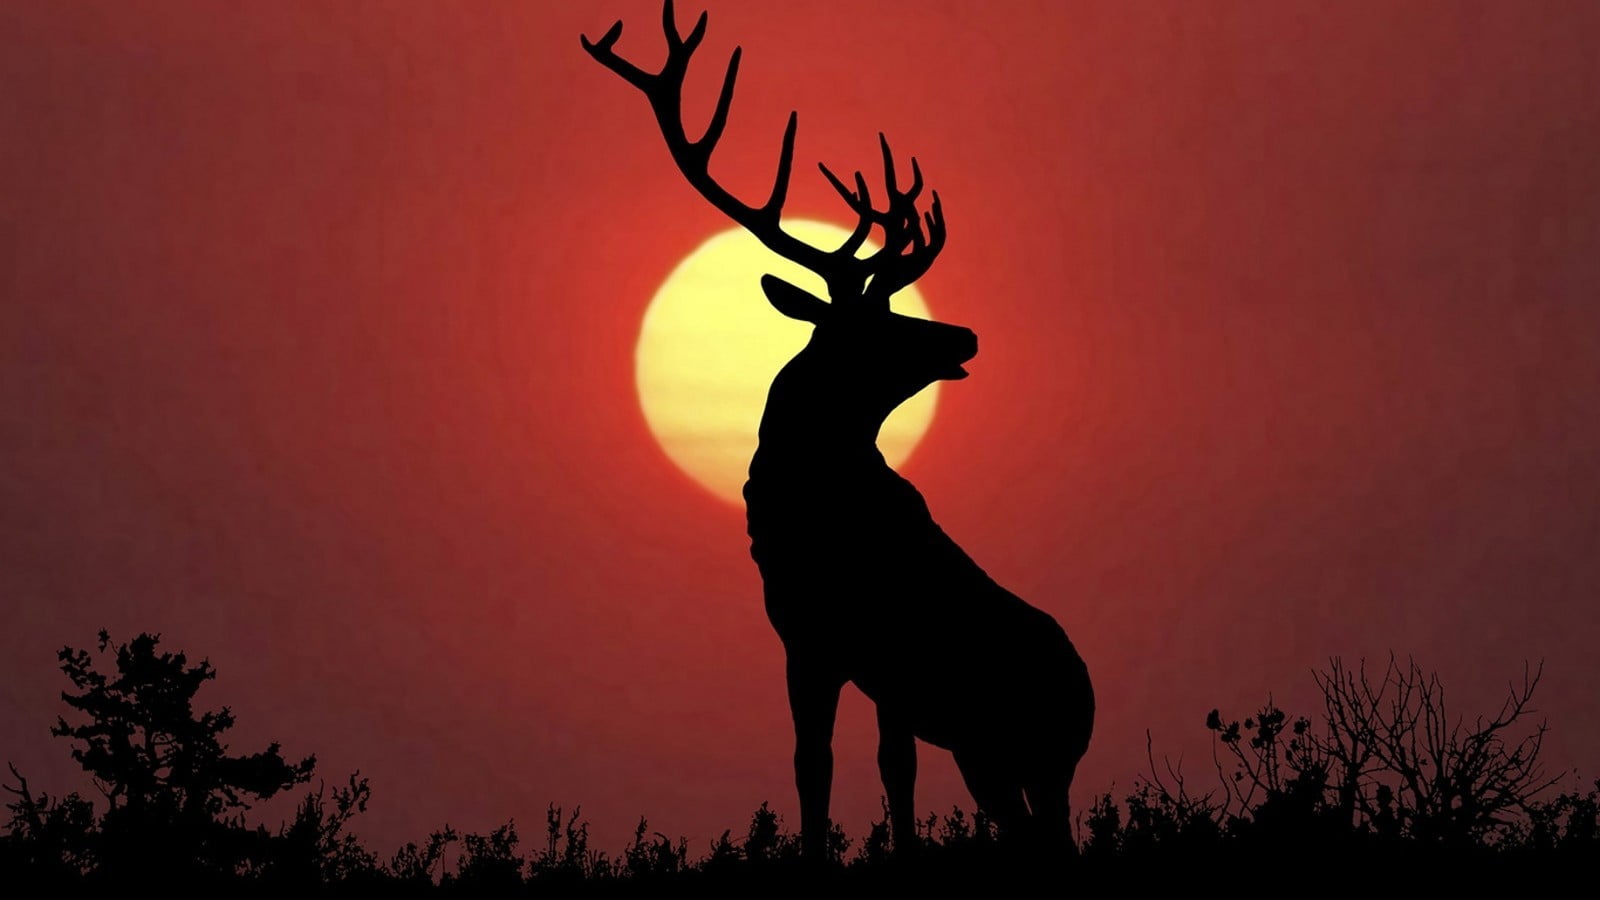 silhouette of deer under full moon, animals, nature, deer, elk